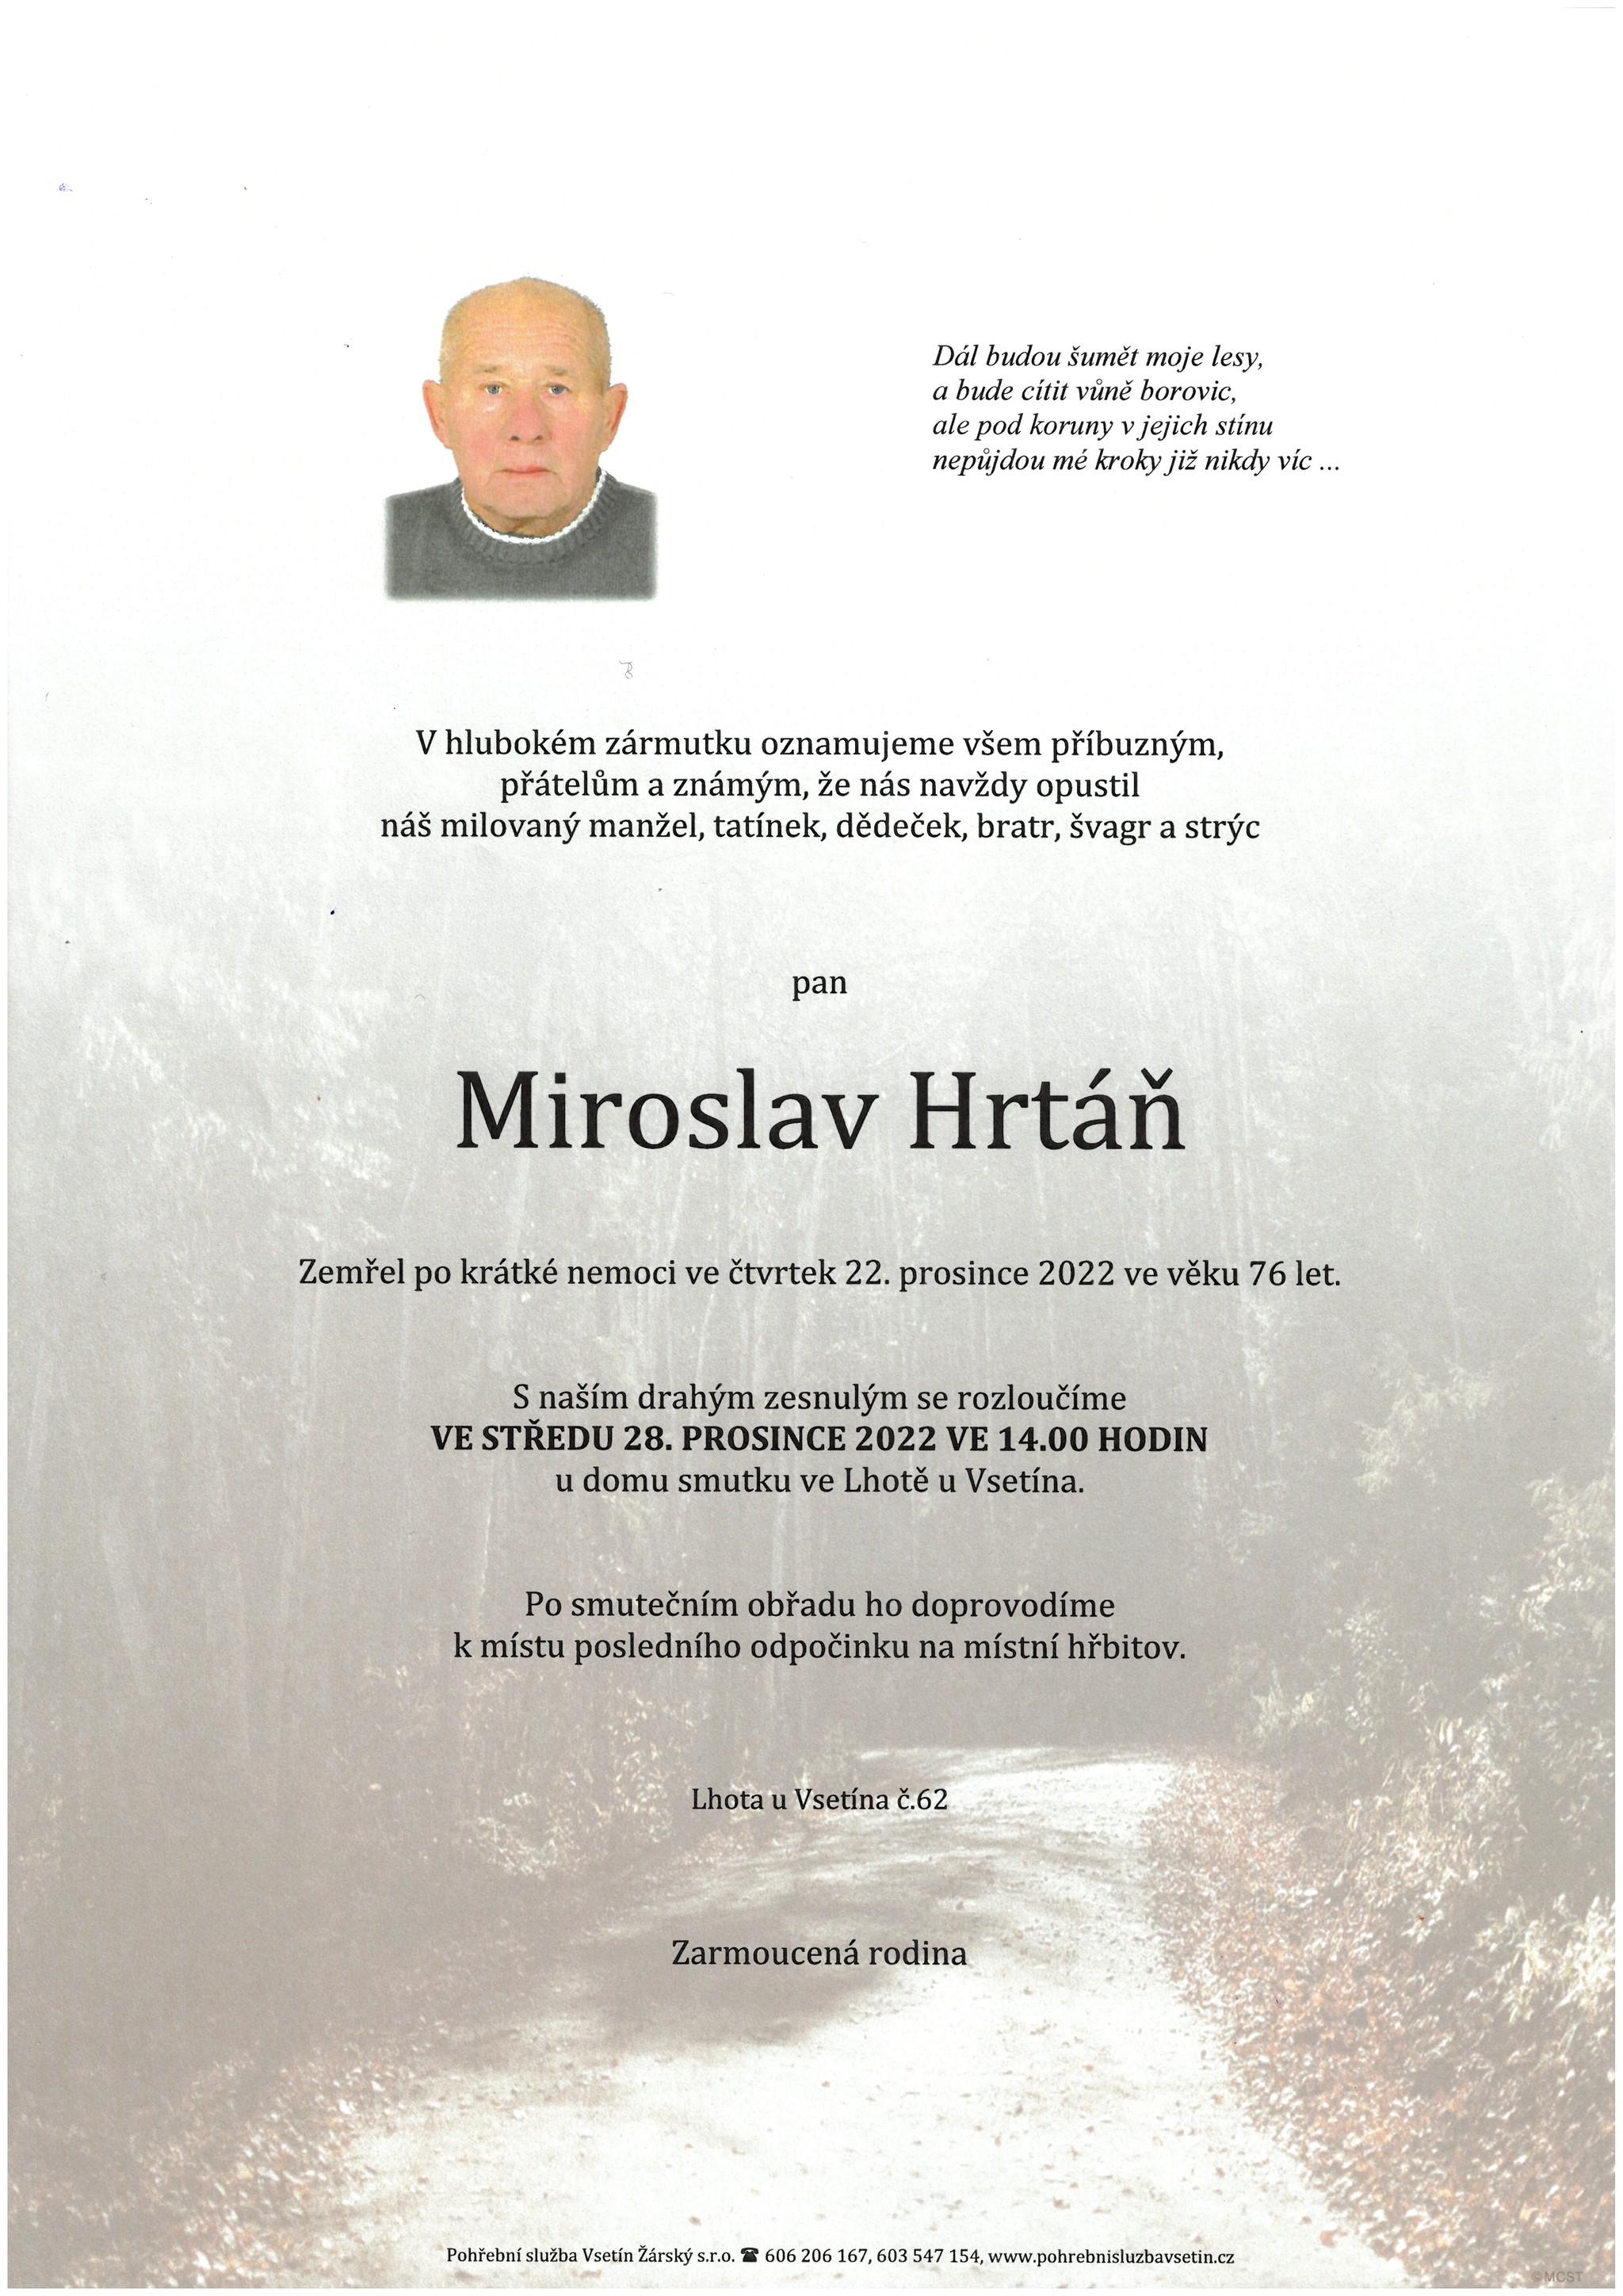 Miroslav Hrtáň